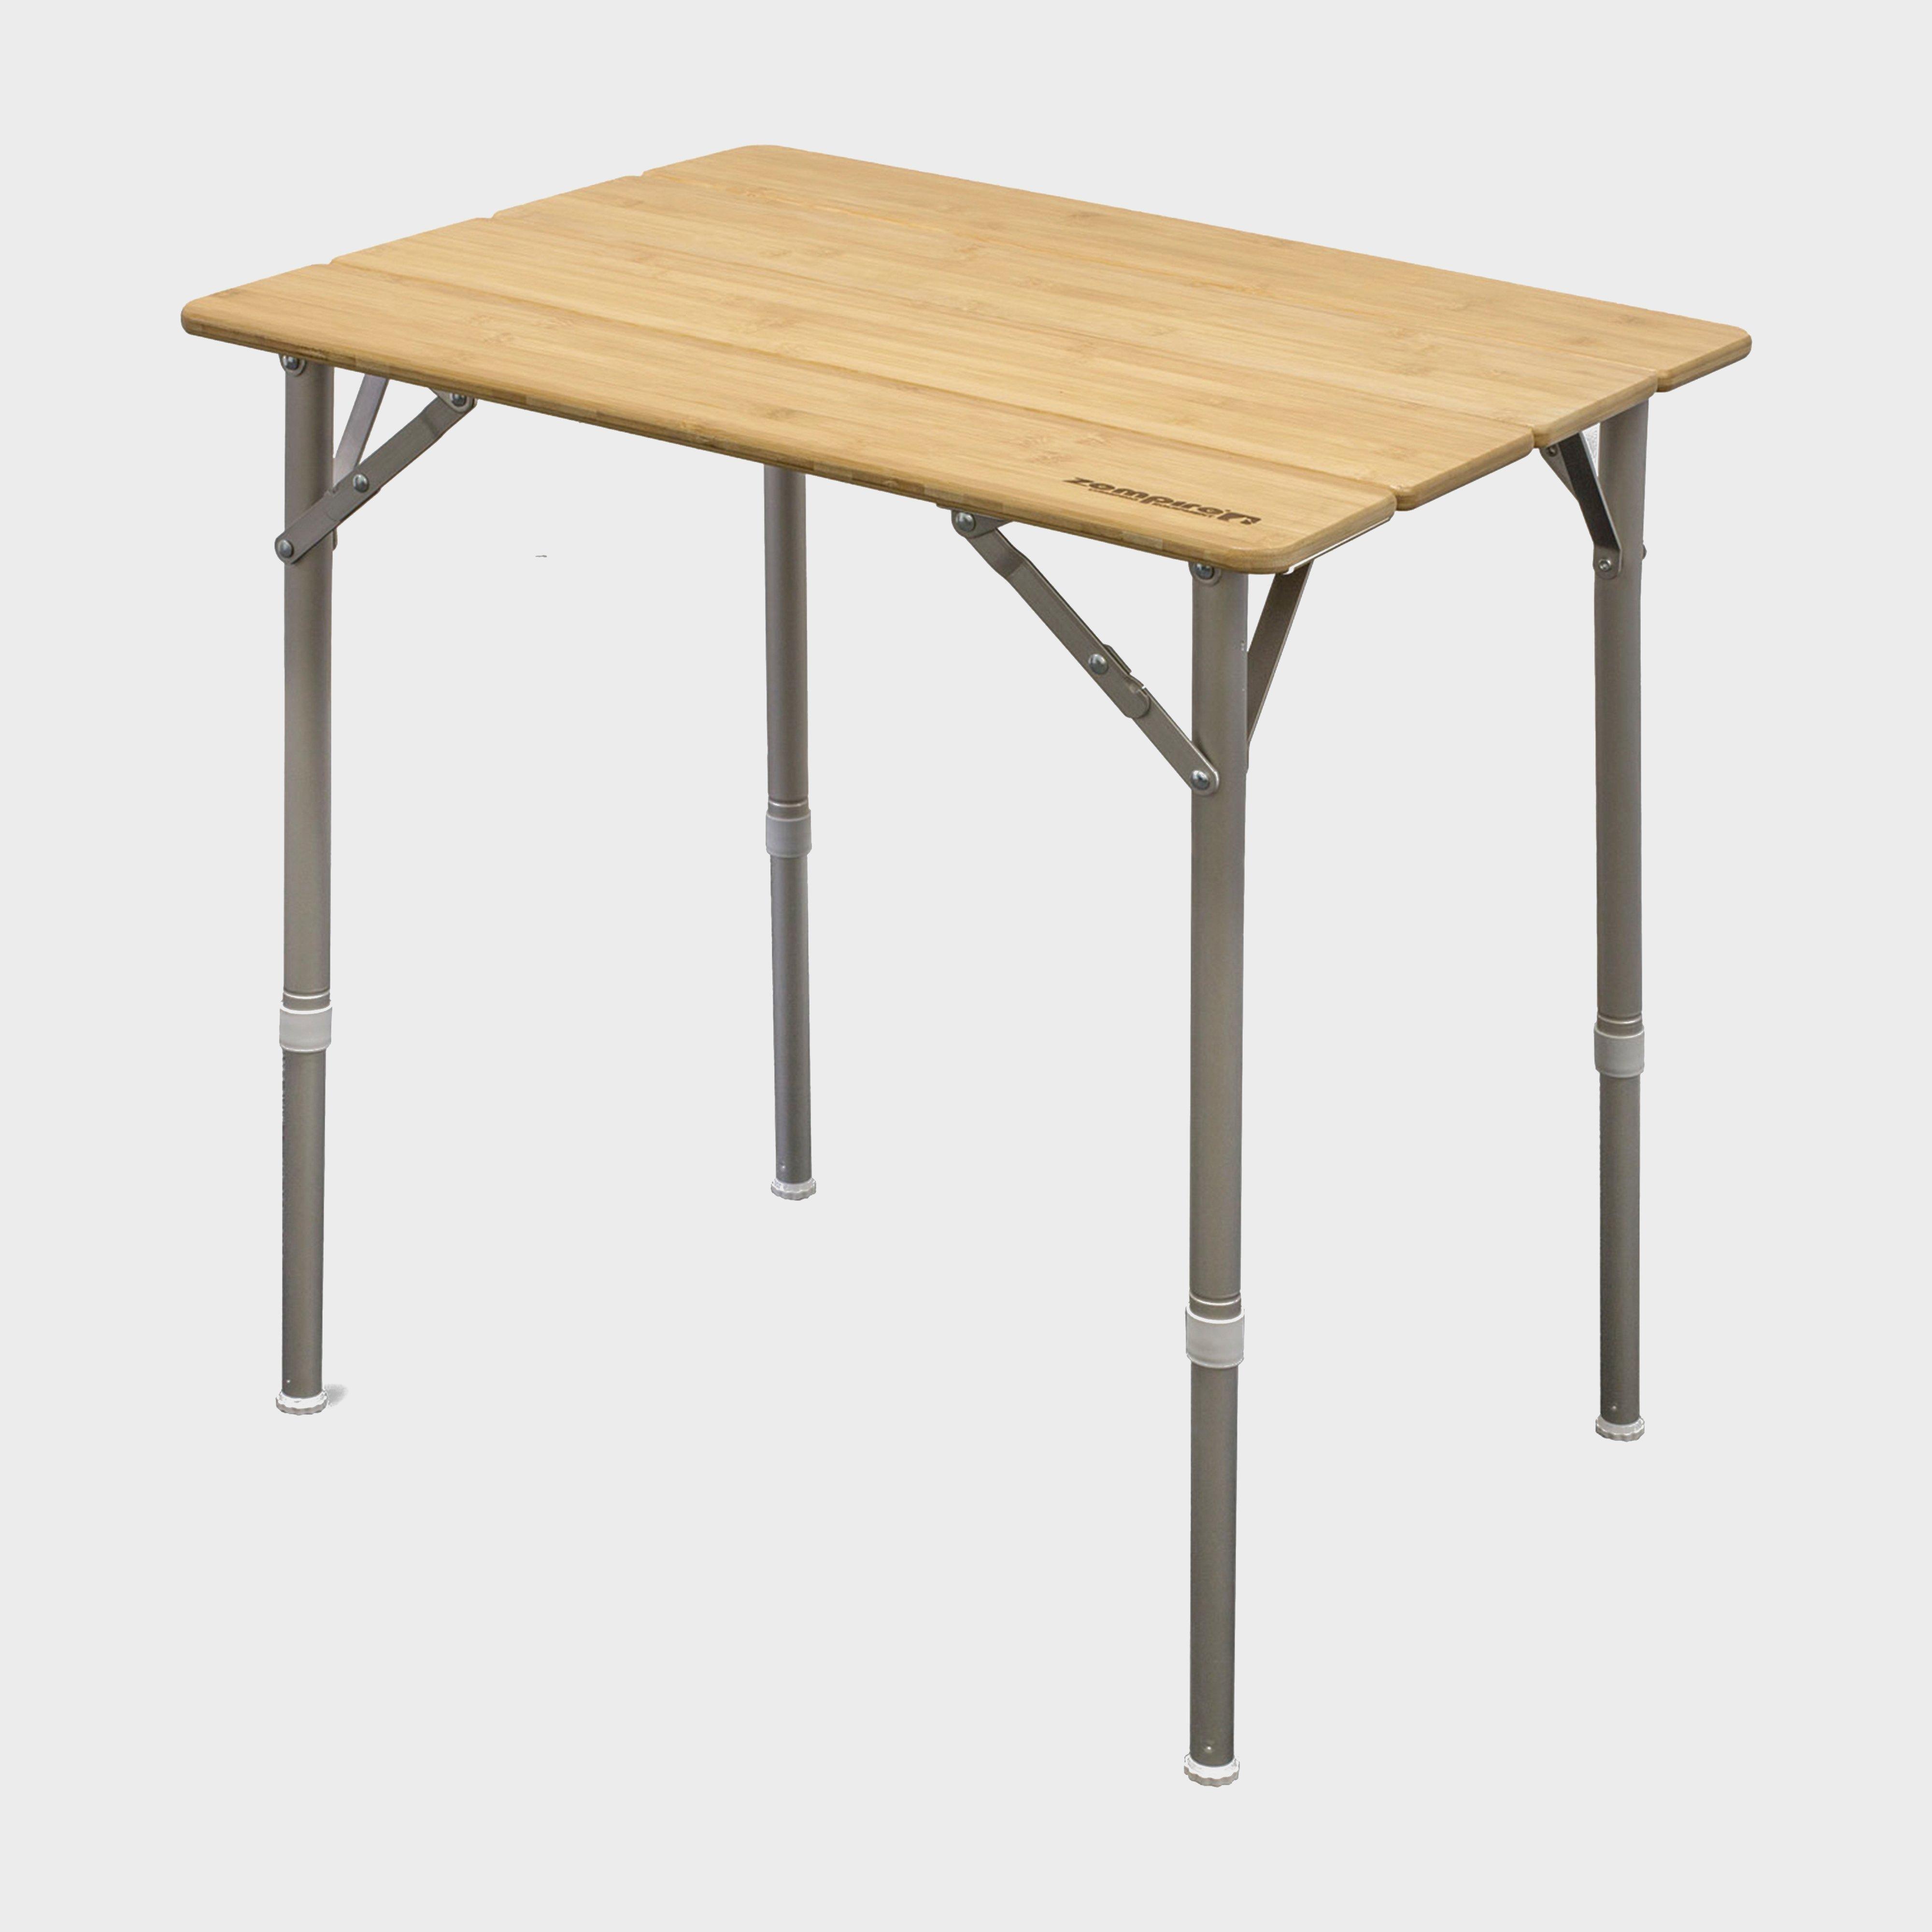  Zempire Kitpac Table (Standard)